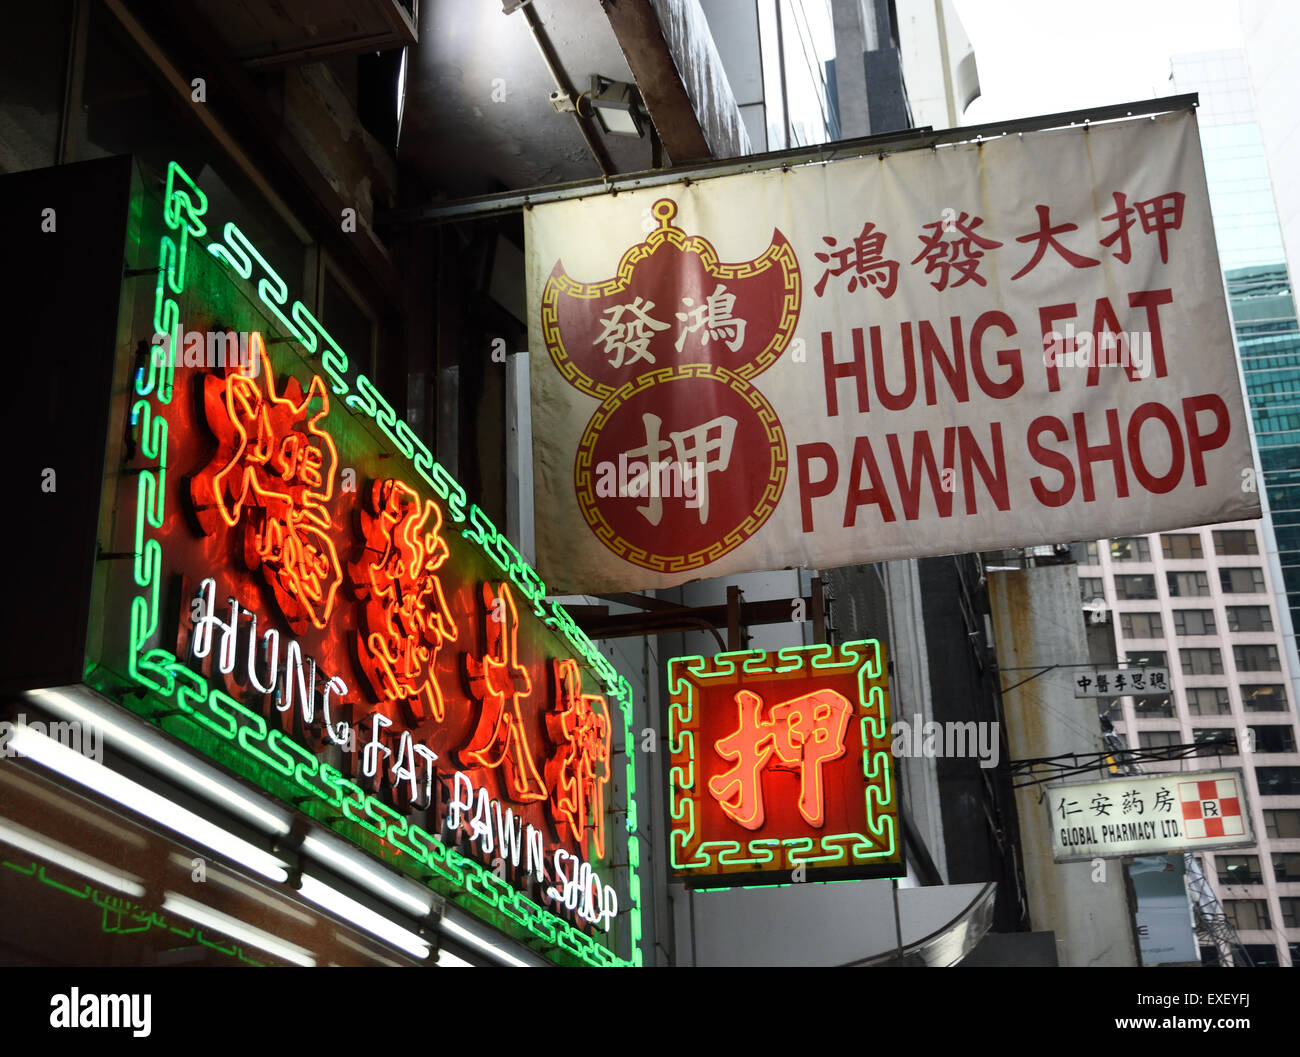 Hung Fat Pawn Shop Hong Kong China Chinese Stock Photo